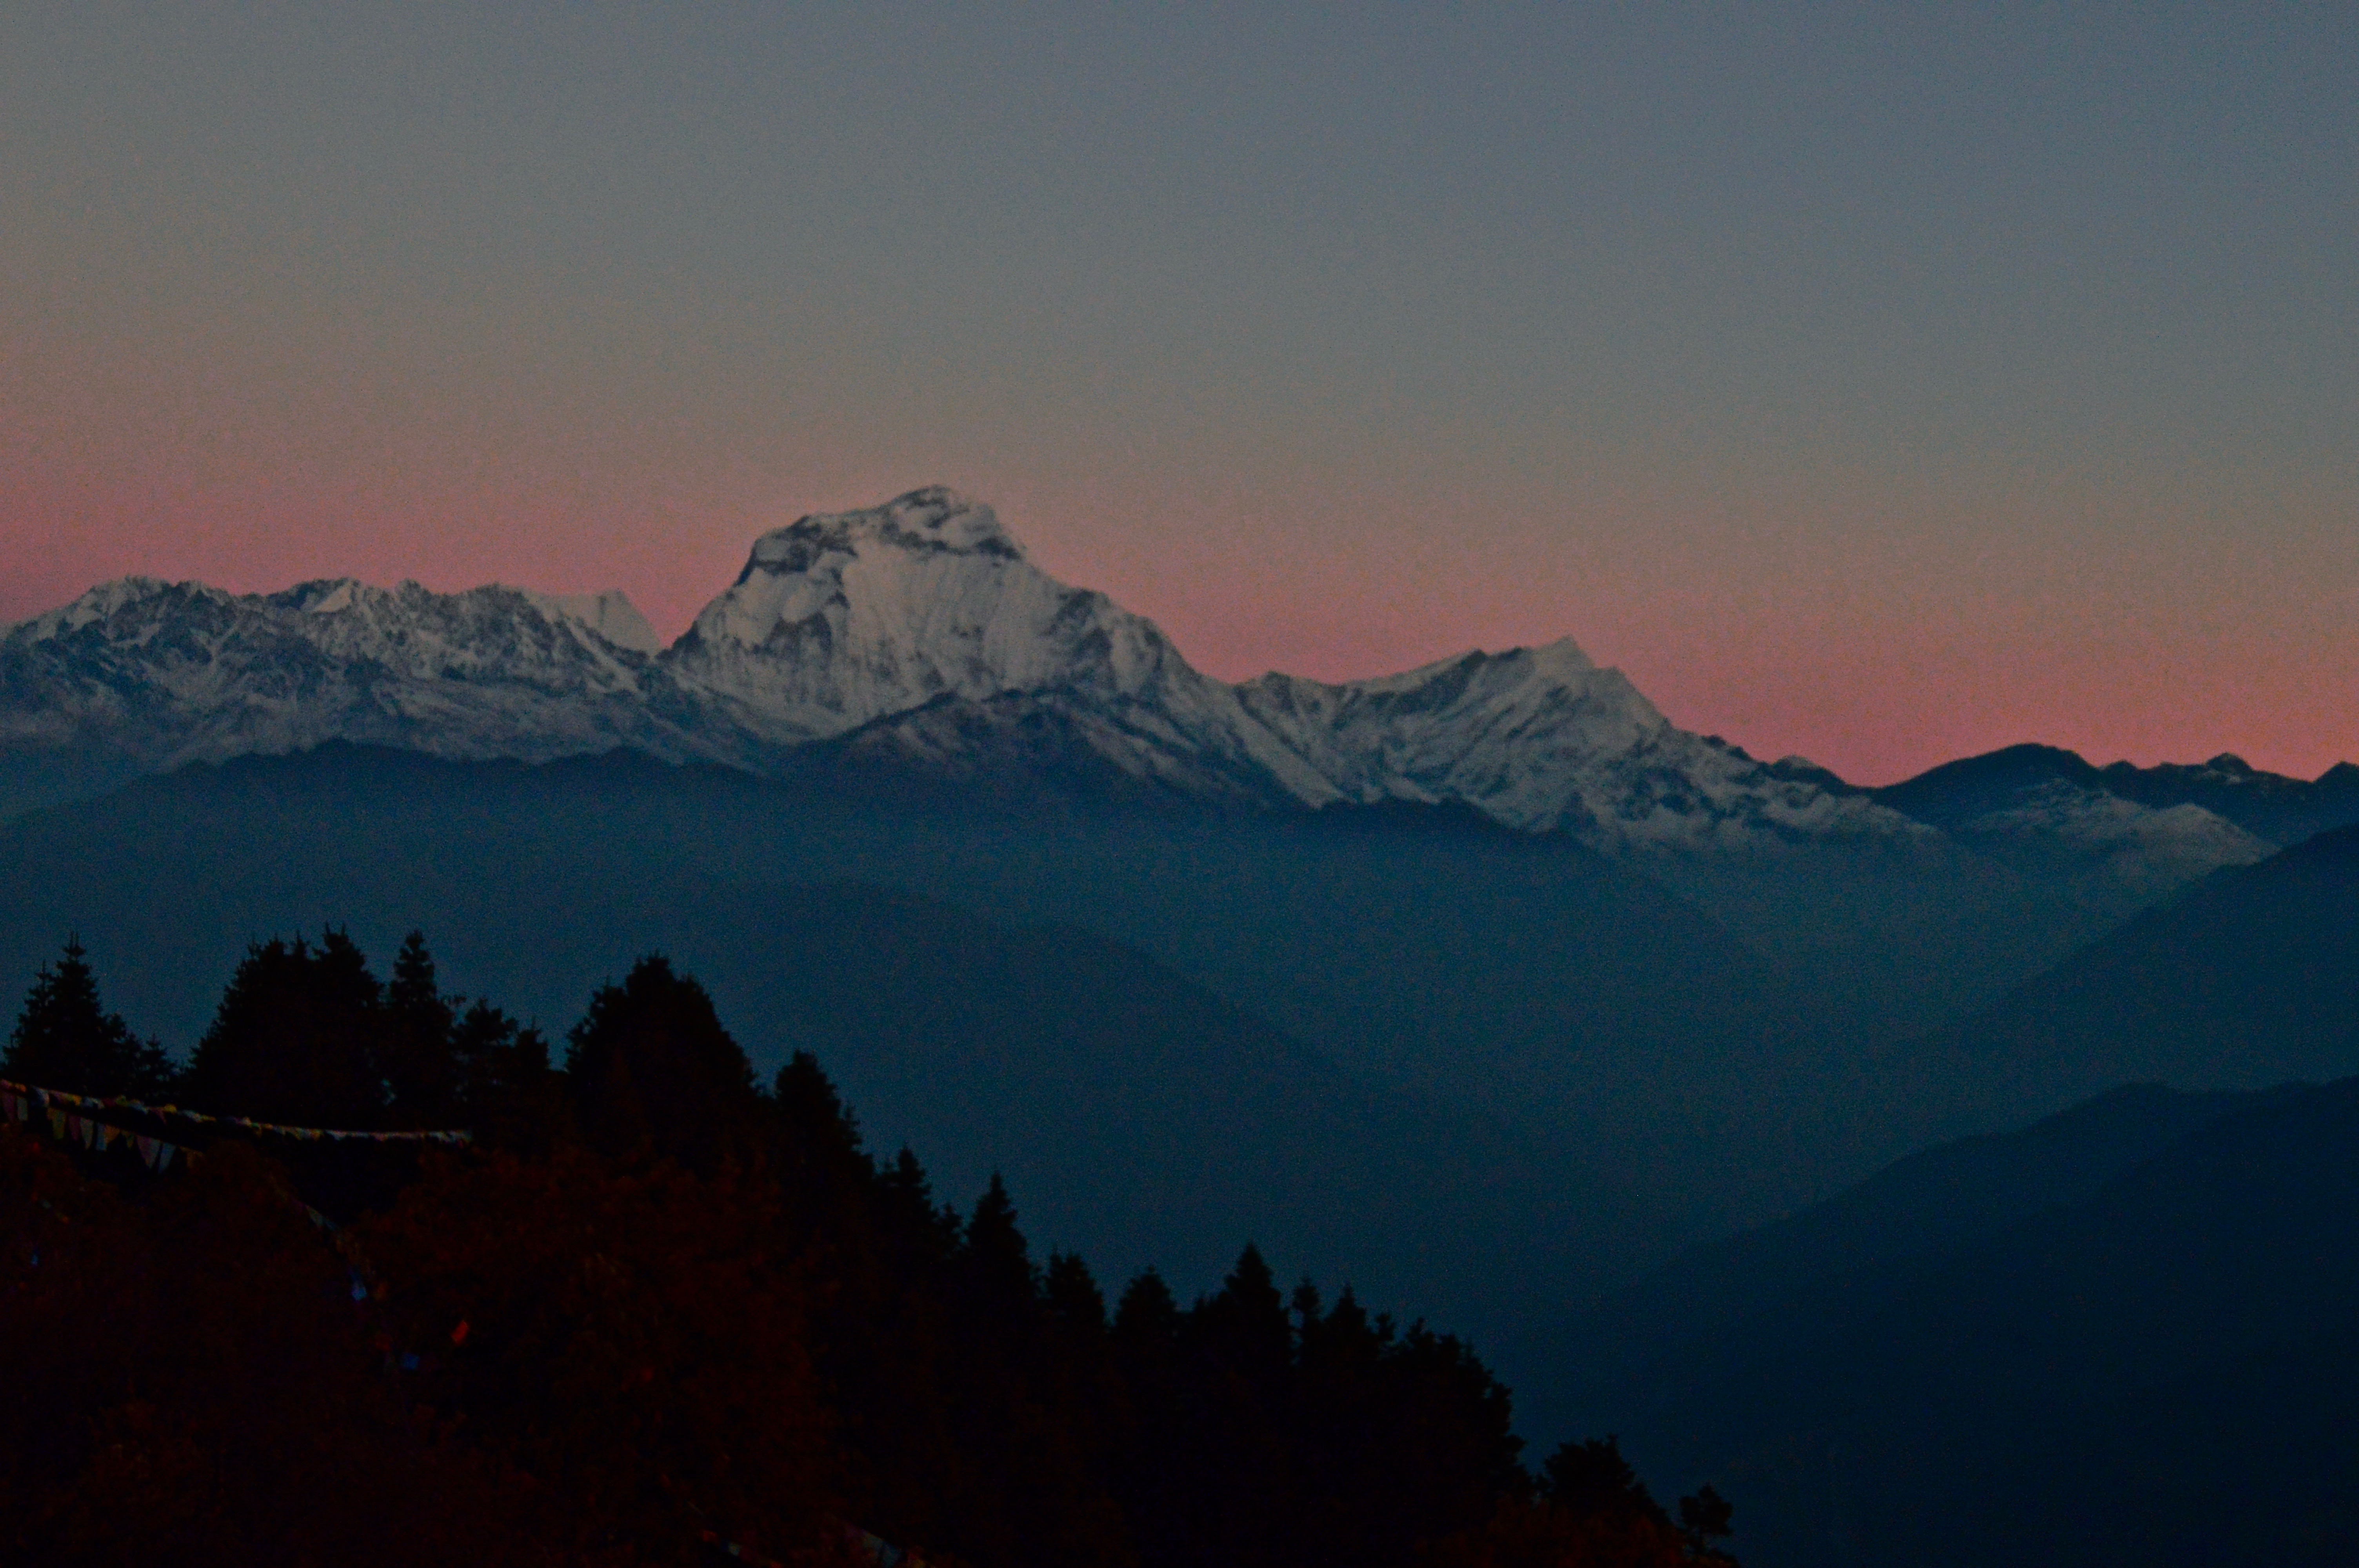 Peaks of the Annapurna Treks: A Photo Gallery